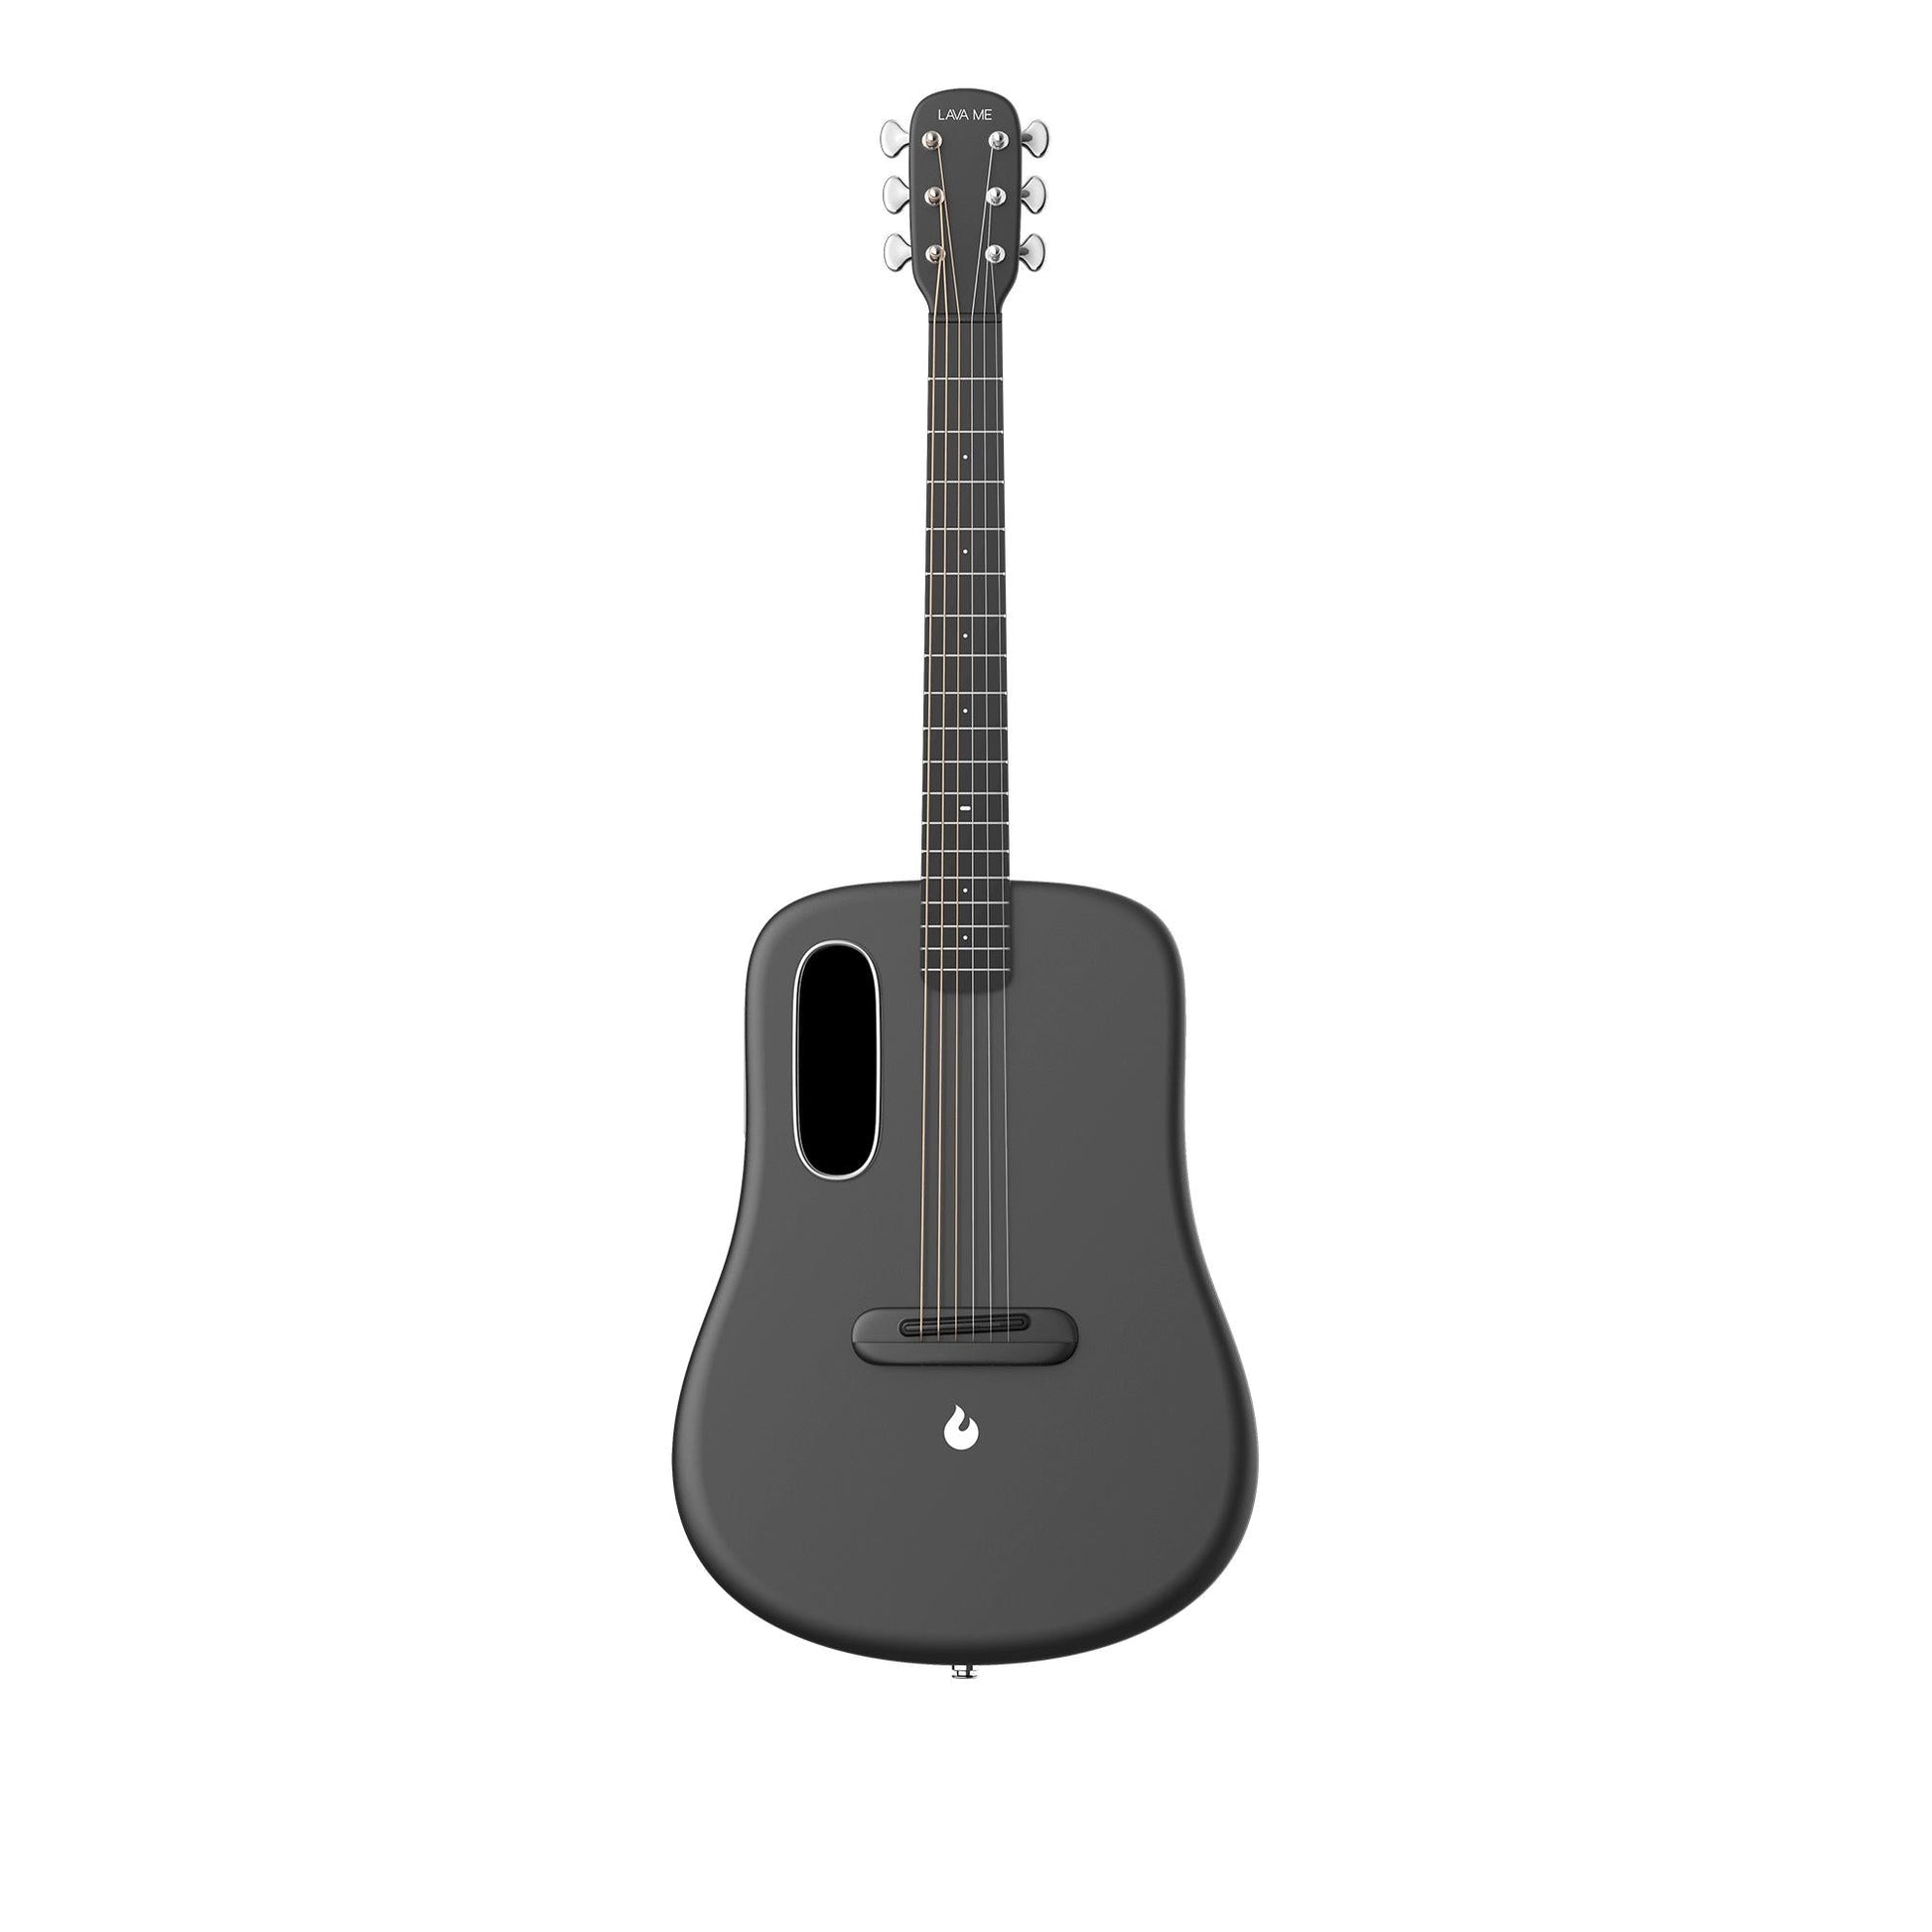 Đàn Guitar Acoustic Lava Me 4 Carbon Fiber - Size 36, Space Gray - Việt Music